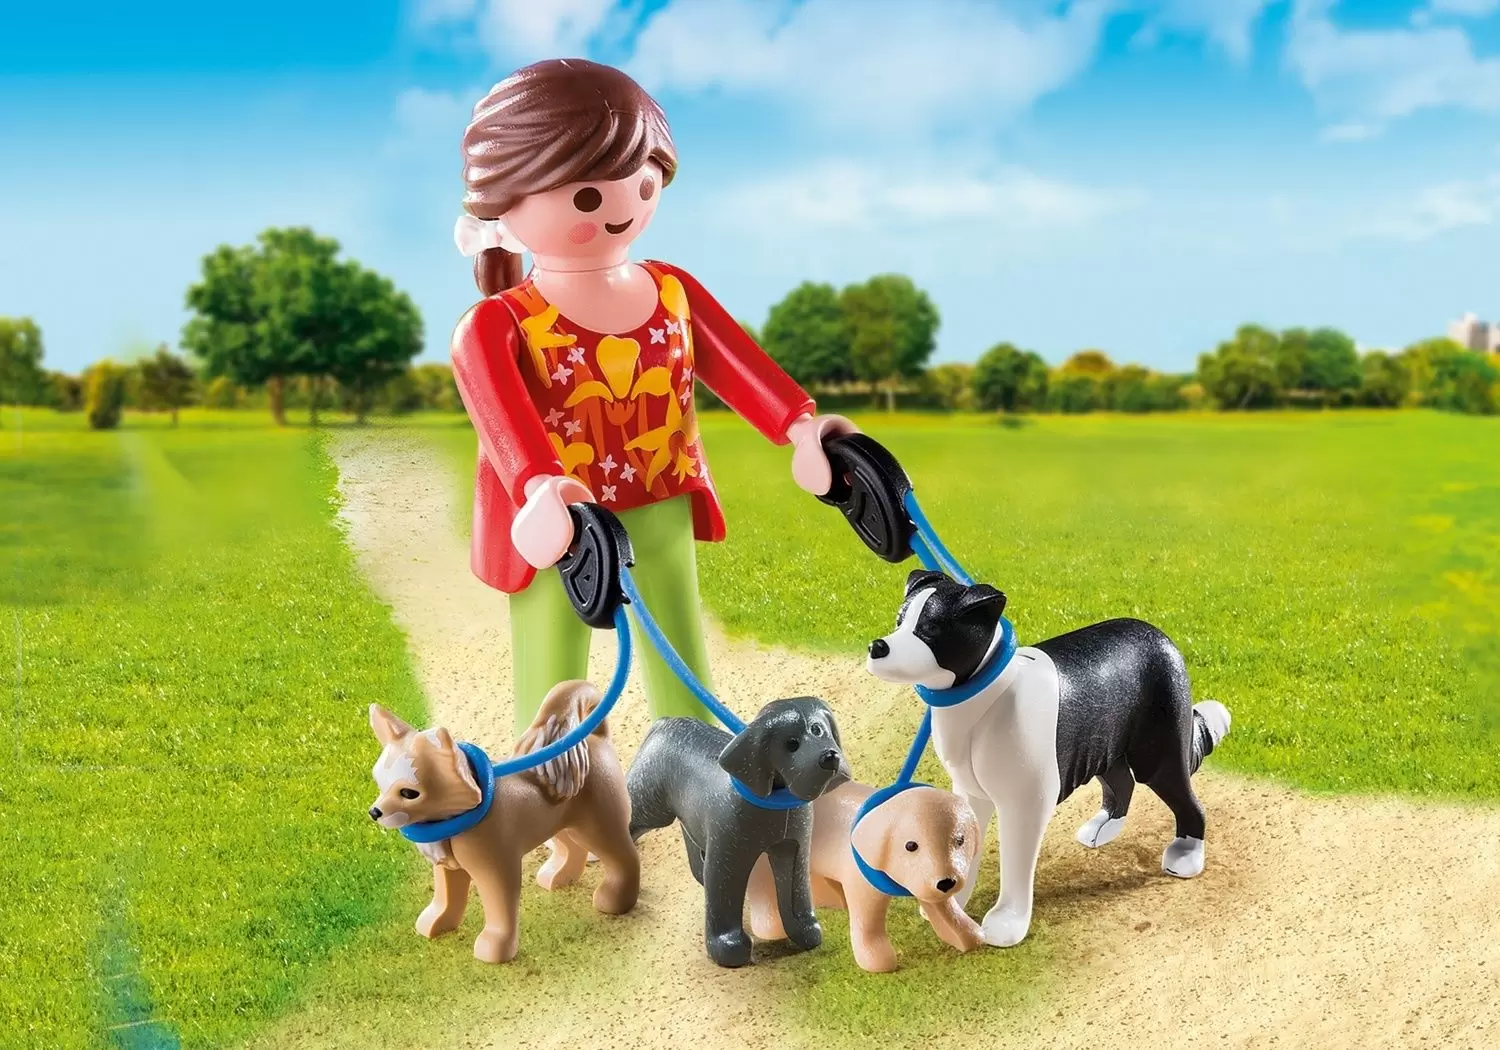 Playmobil SpecialPlus - Lady with dogs